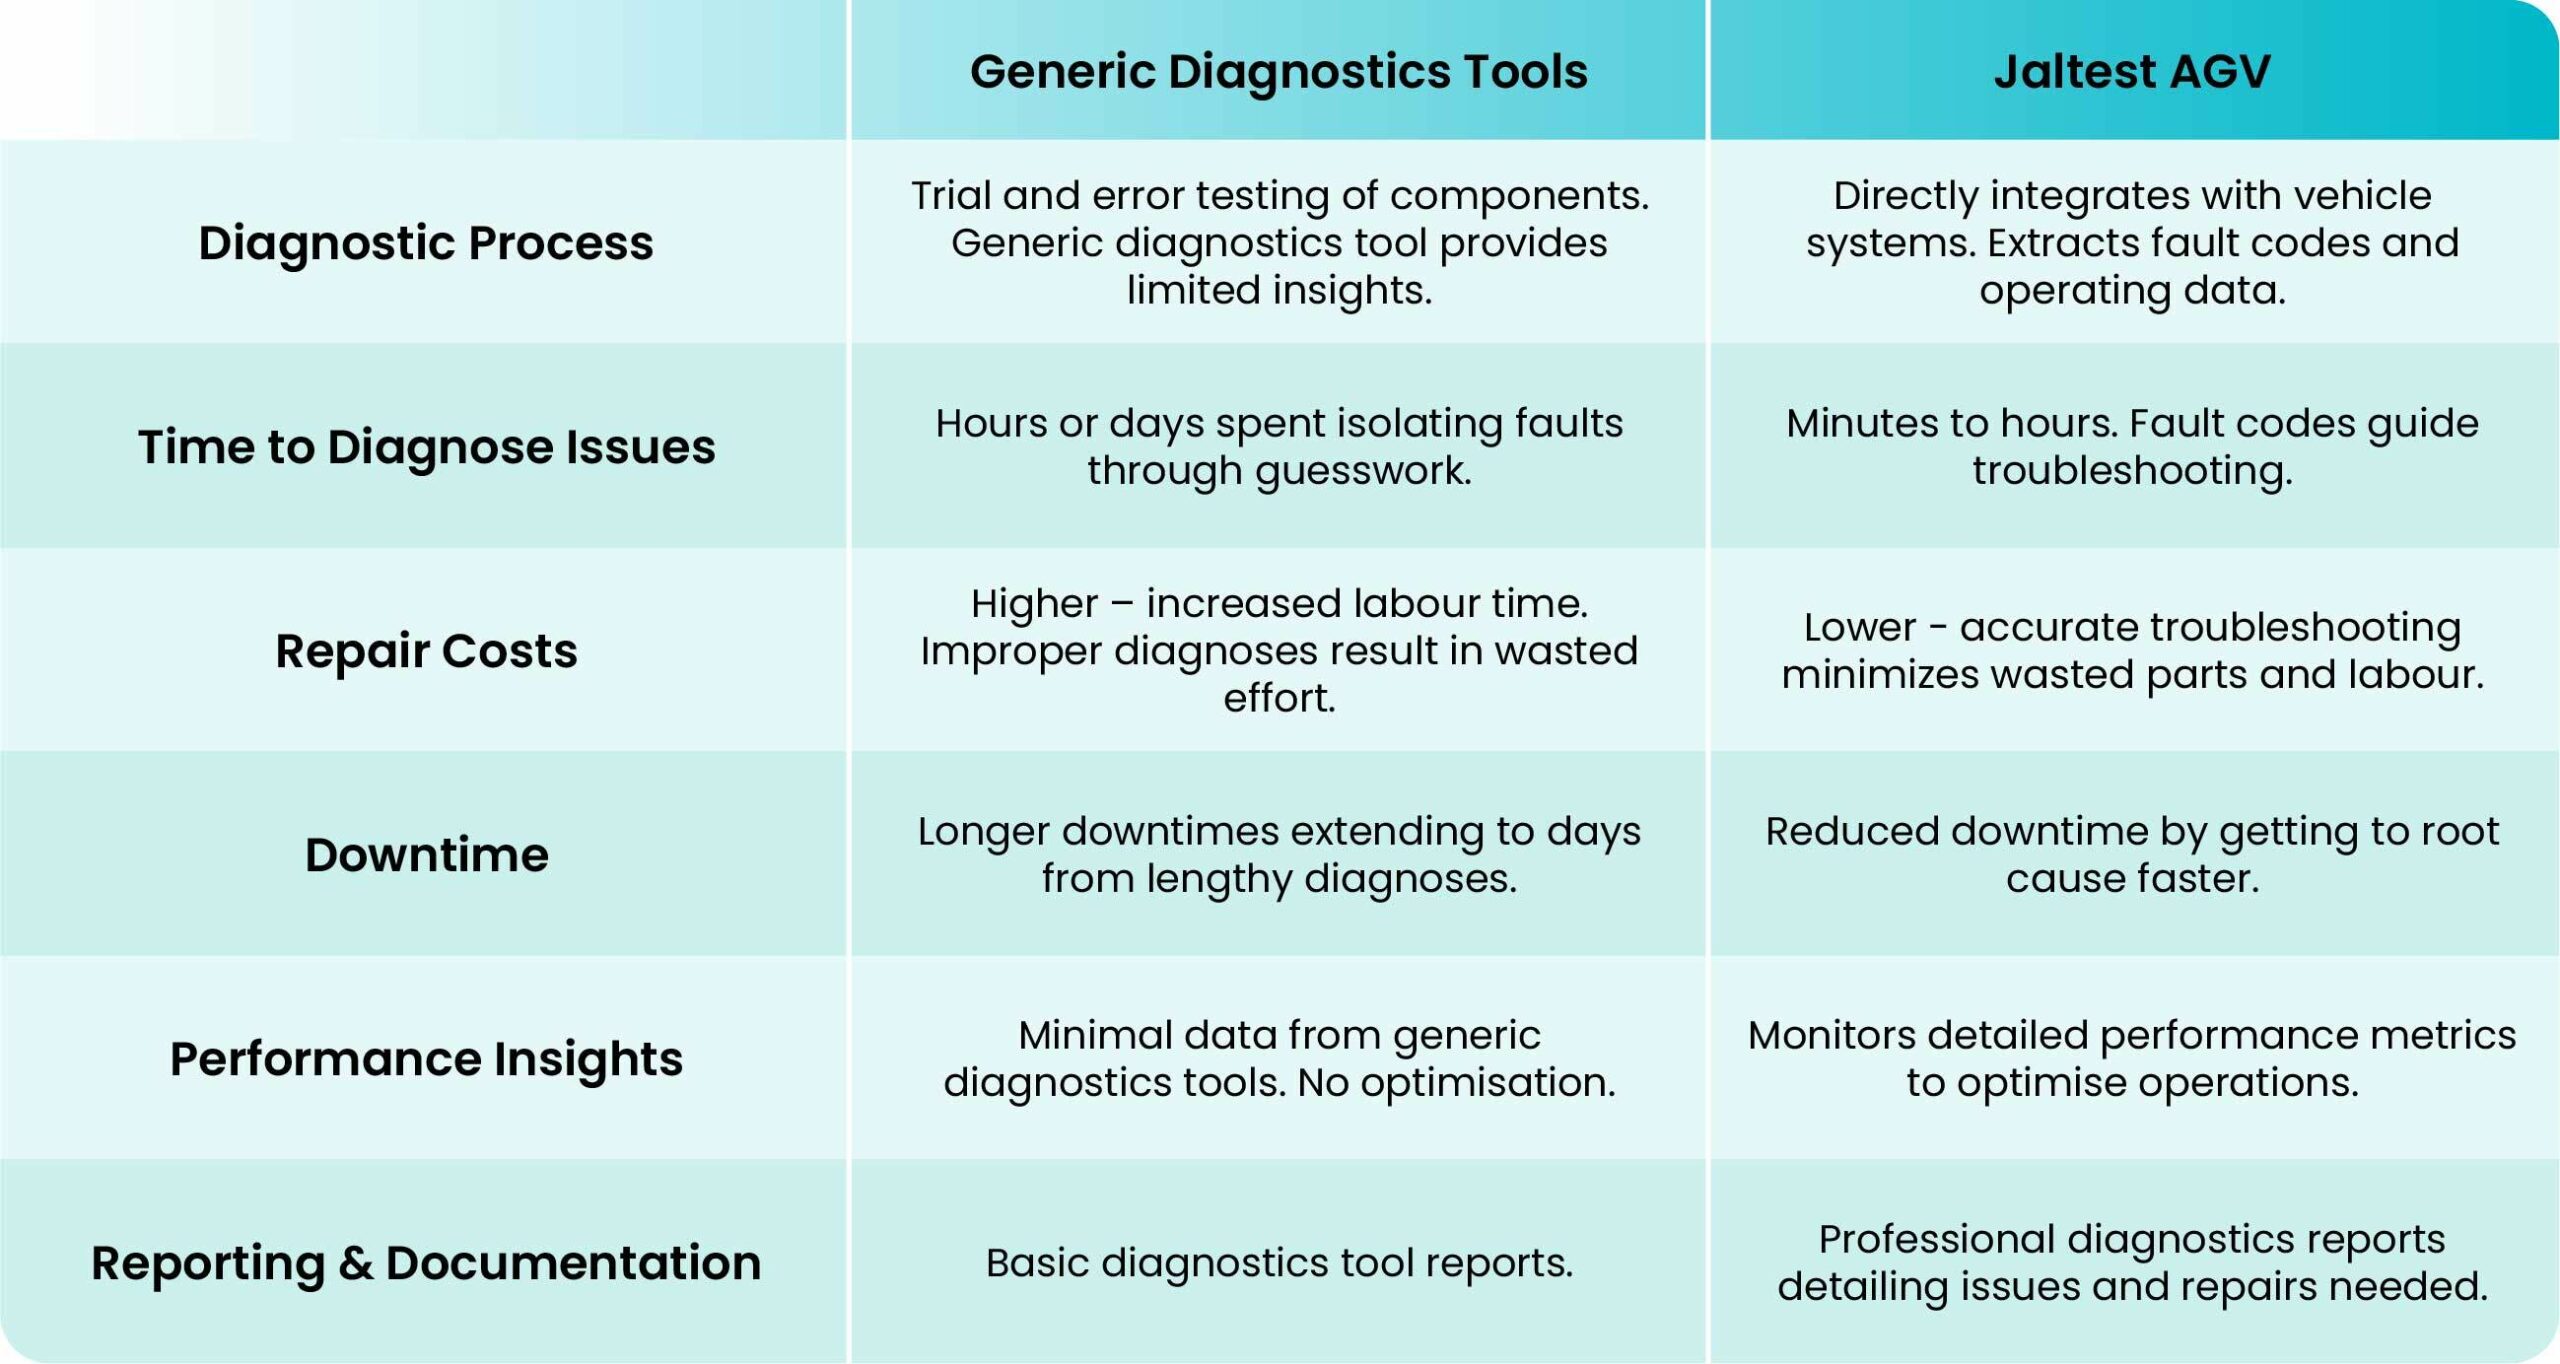 generic-diagnostics-tools-vs-jaltest-agv-table